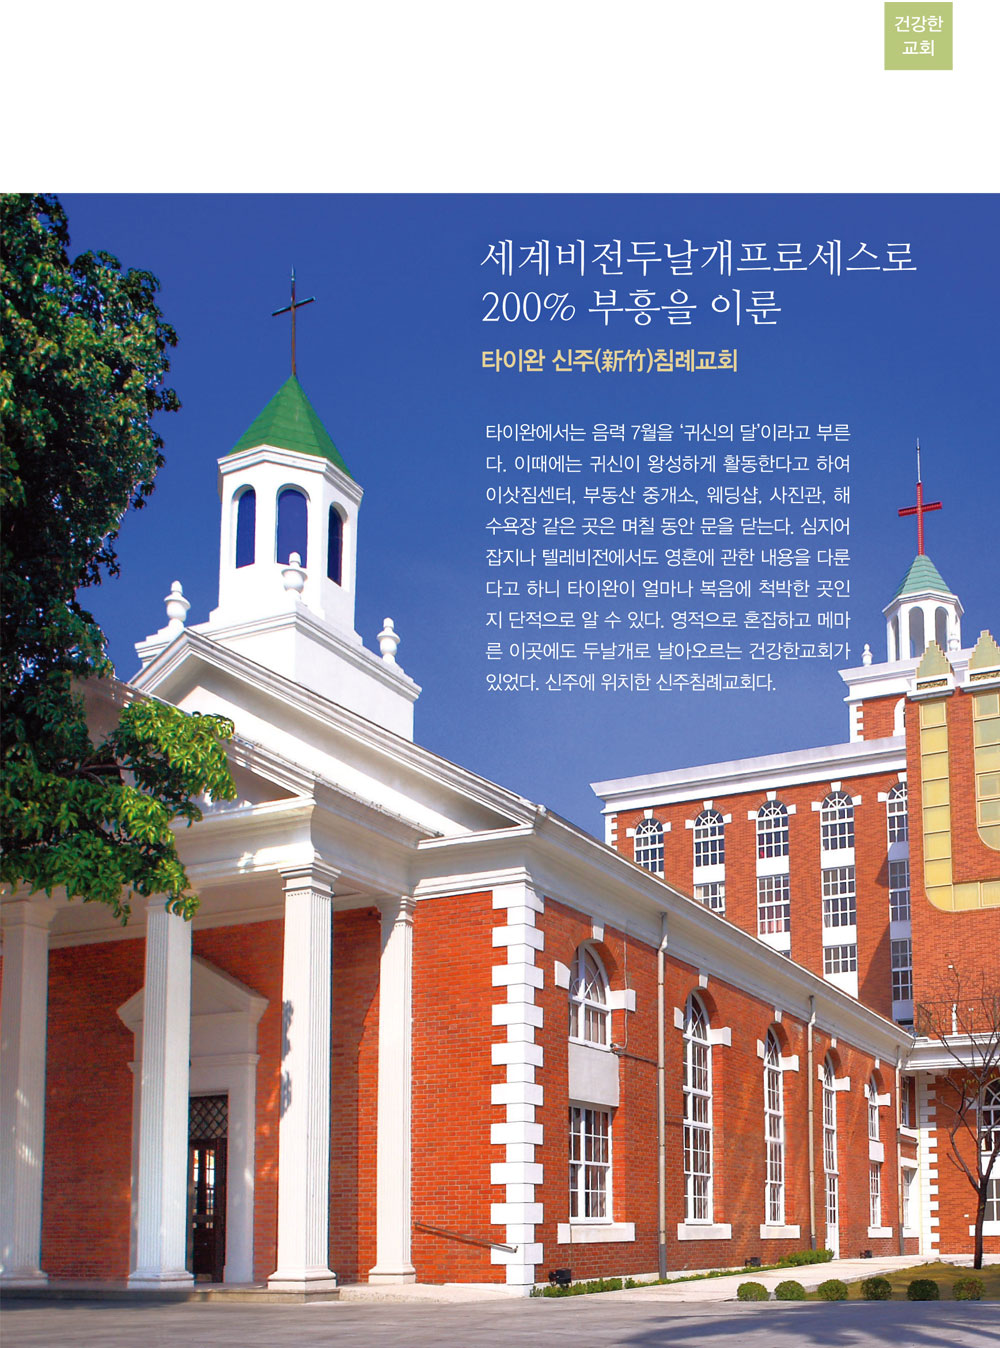 세계비전두날개프로세스로 200% 부흥을 이룬 타이완 신주 침례교회 내용1